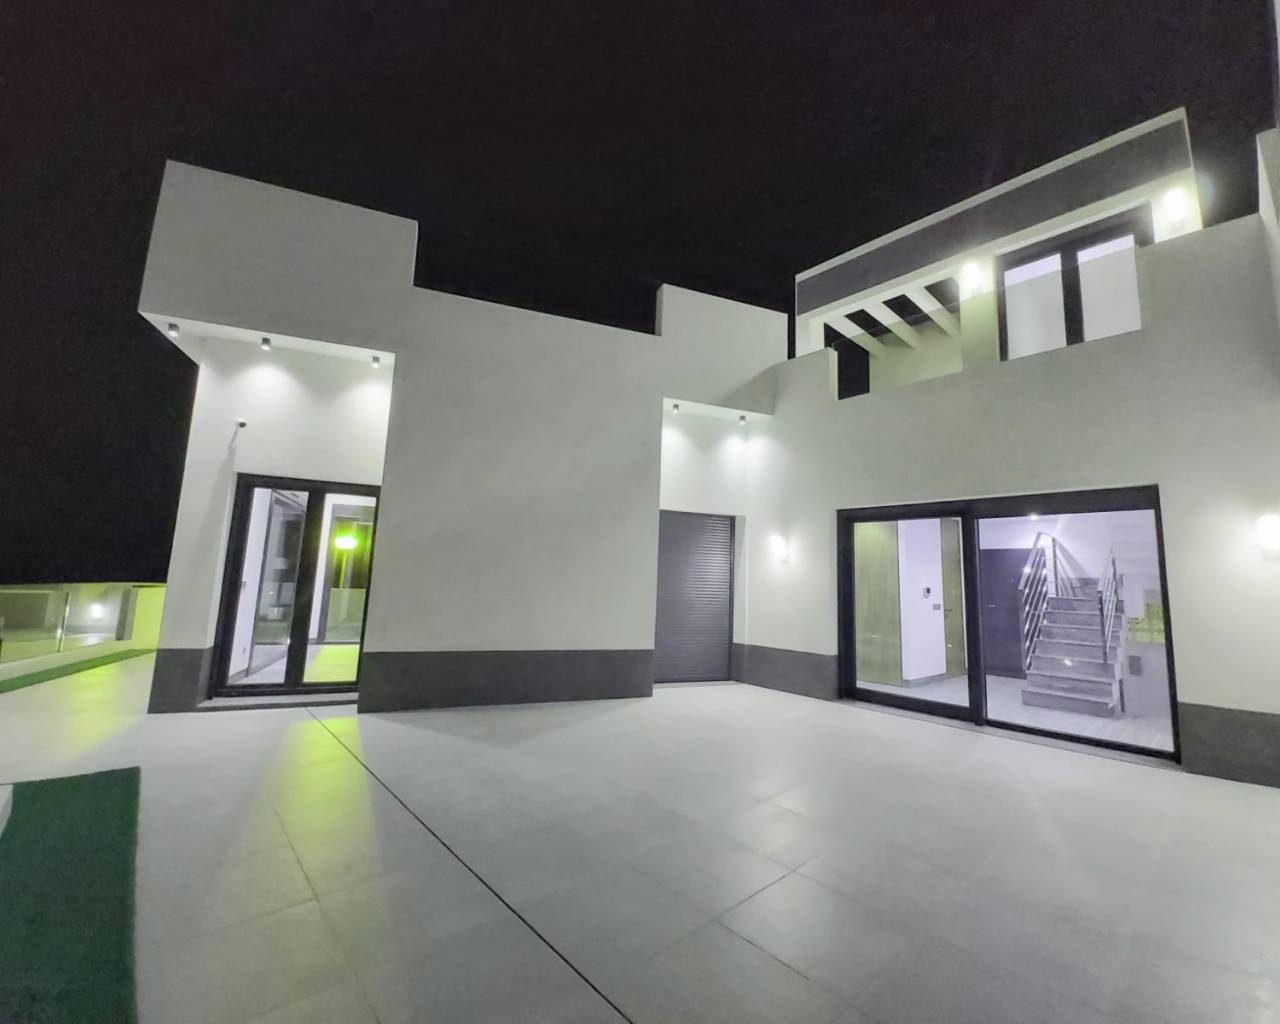 3 bedroom house / villa for sale in Ciudad Quesada, Costa Blanca